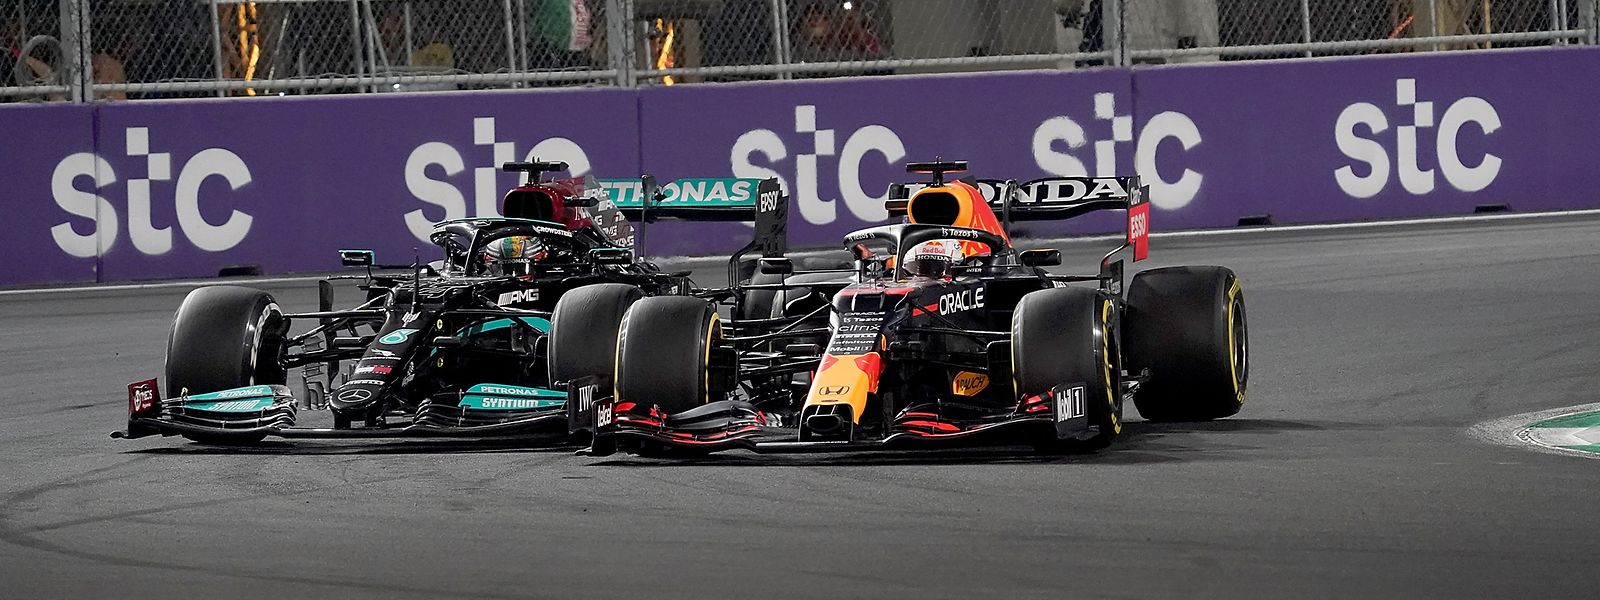 Lewis Hamilton (l) versucht von außen an Max Verstappen (r) vorbeizuziehen. 